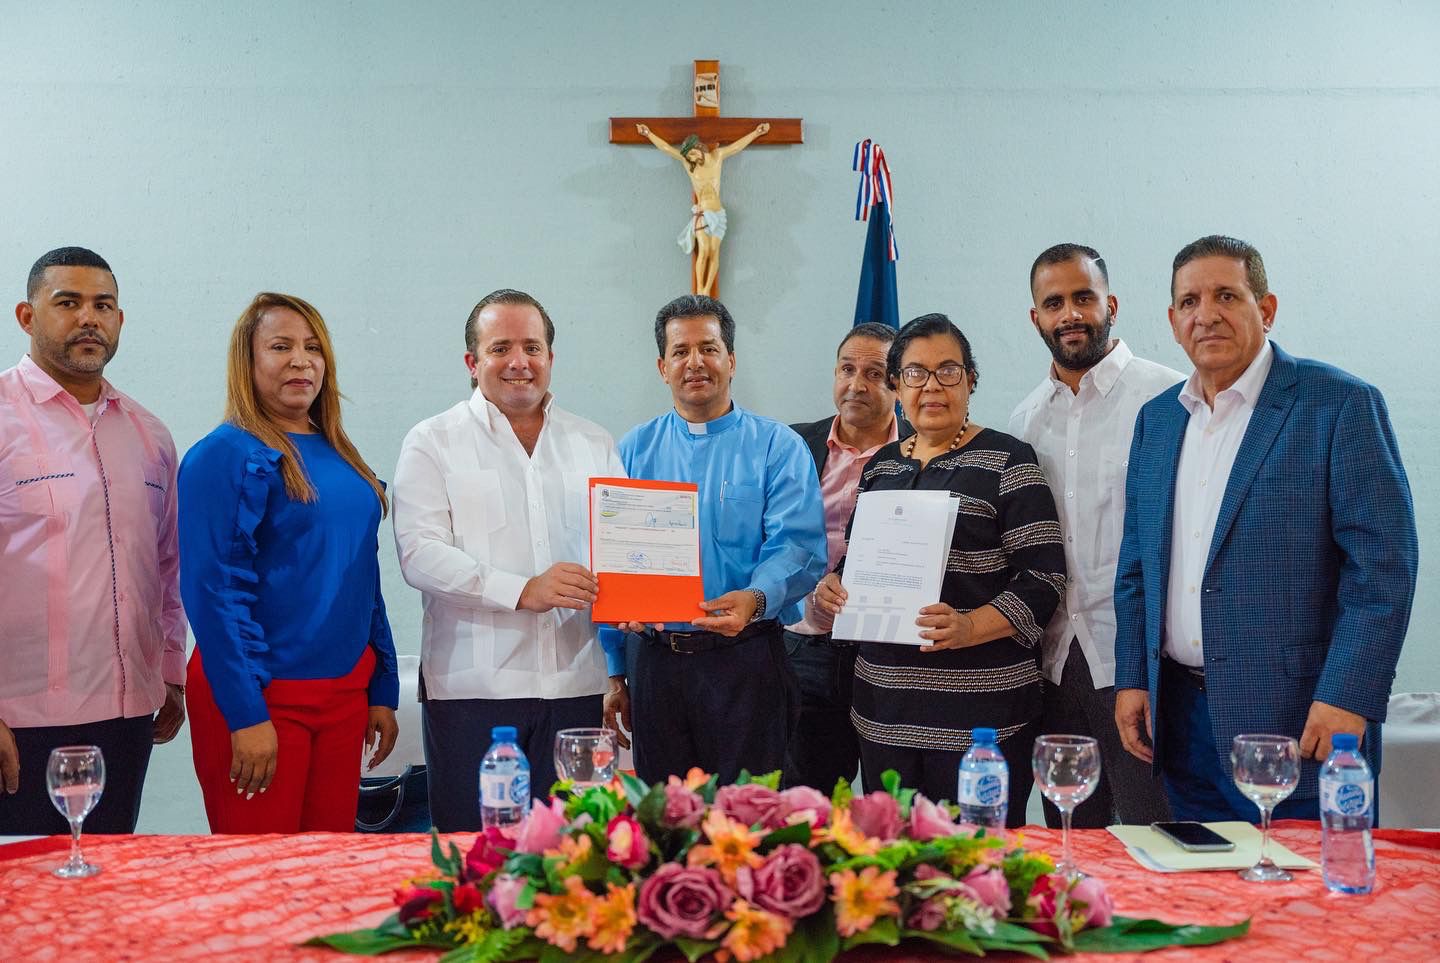 Gobierno entrega RD$10 millones a parroquias Nuestra Señora de Fátima y San Antonio de Padua en Bonao